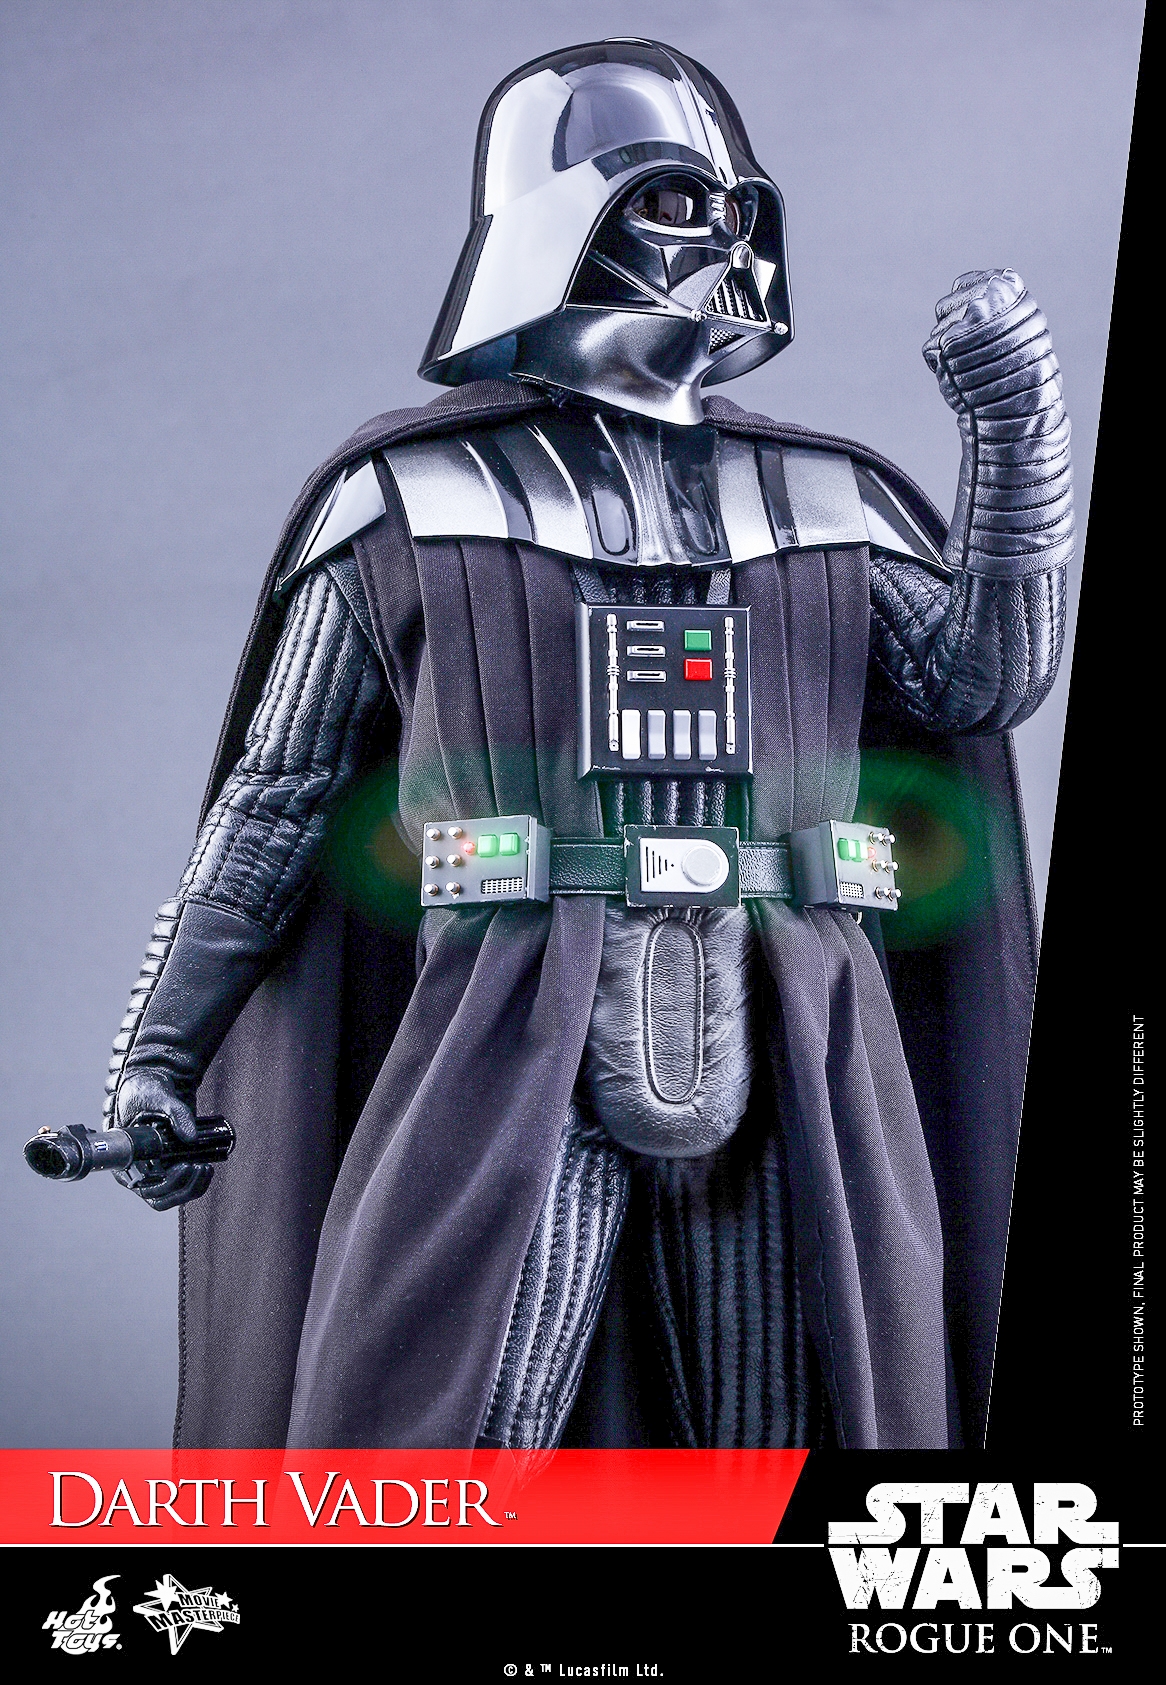 Hot-Toys-MMS388-Rogue-One-Darth-Vader-005.jpg